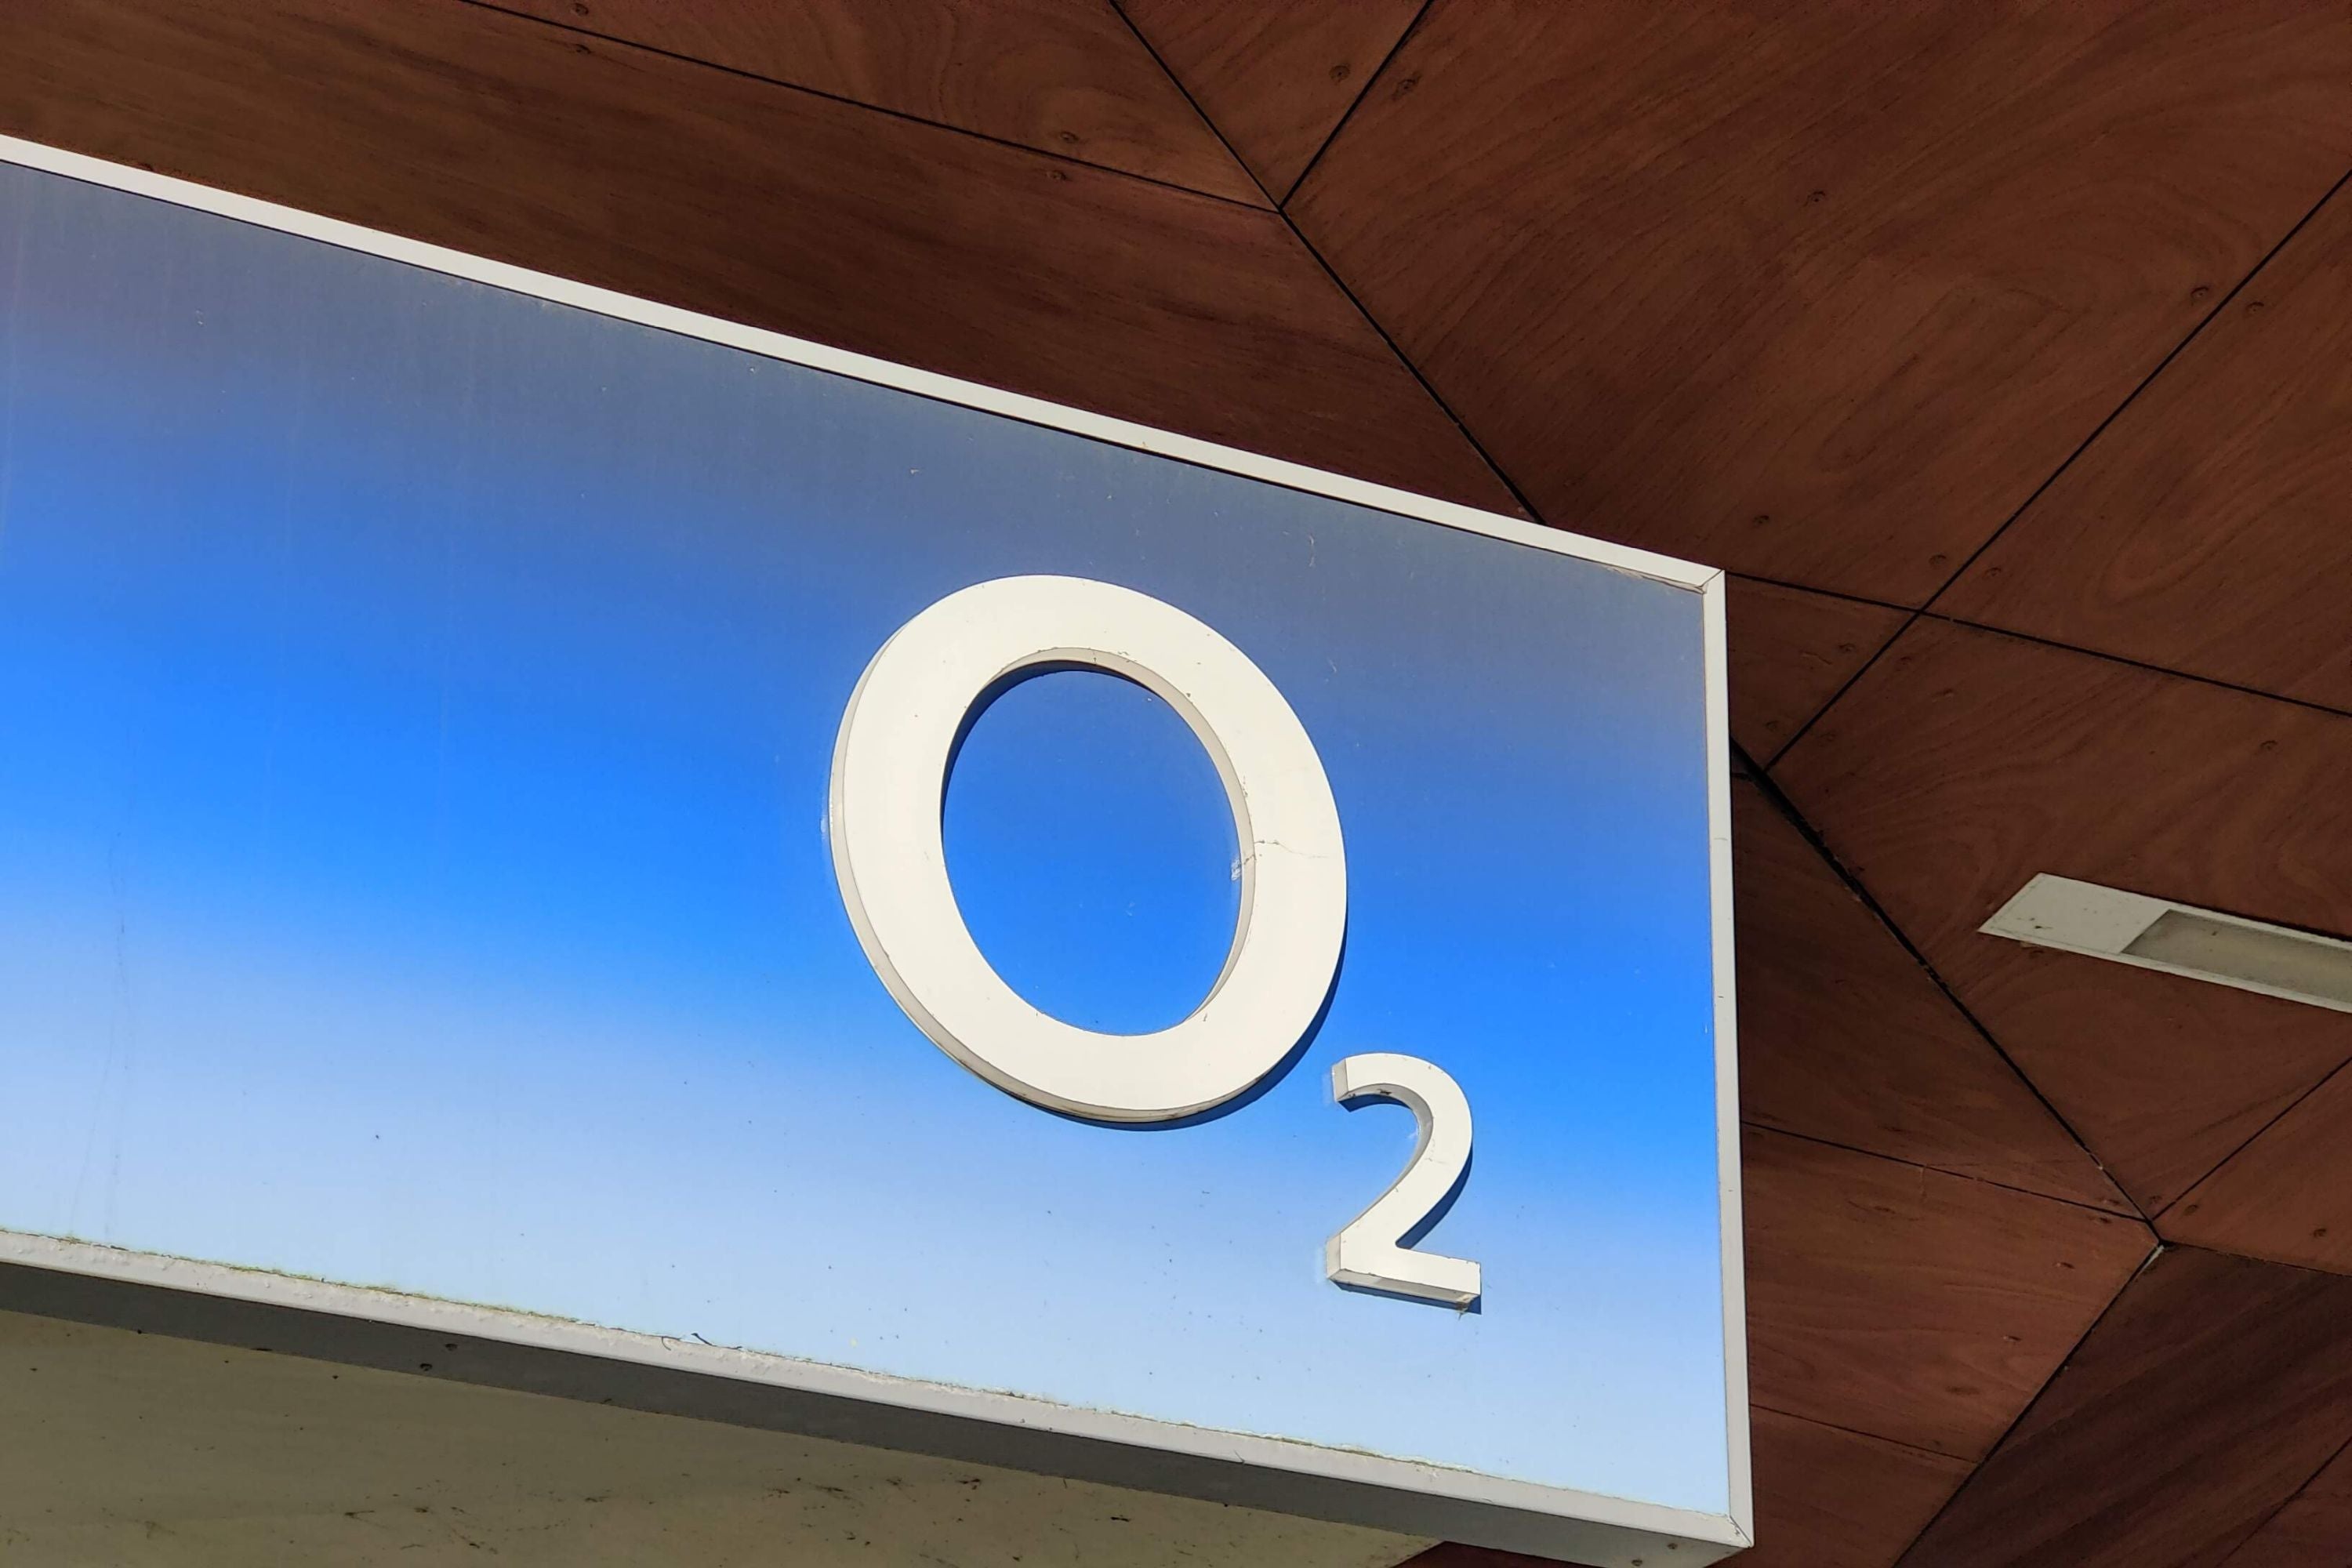 #Schon wieder: O2 kündigt nächste Preiserhöhung an